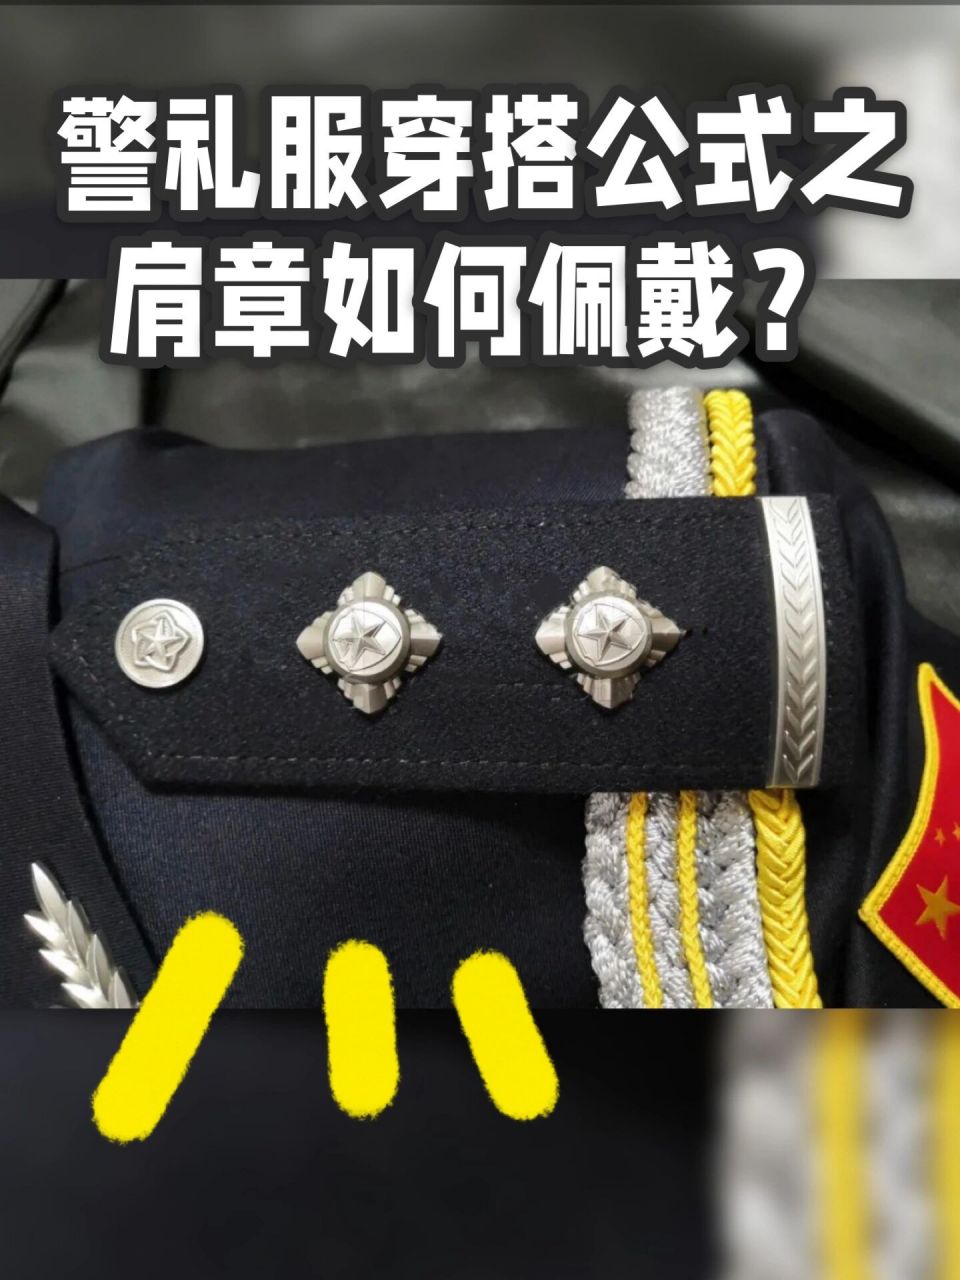 警礼服穿搭公式之肩章如何佩戴?